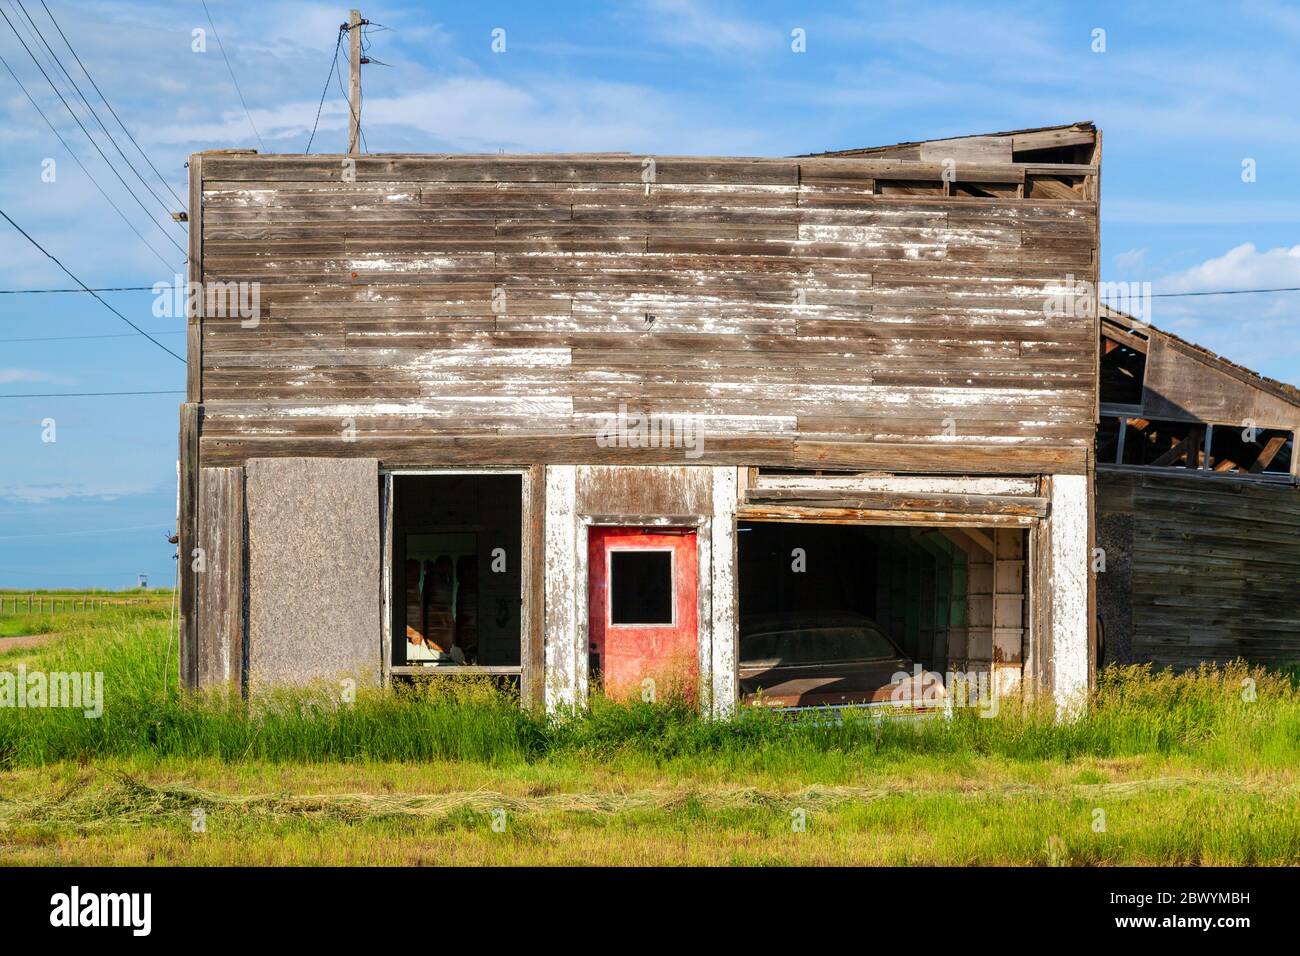 Robsart è un comune rurale del 51 di Reno, in provincia di Saskatchewan, in Canada. Robsart aveva una popolazione di Foto Stock